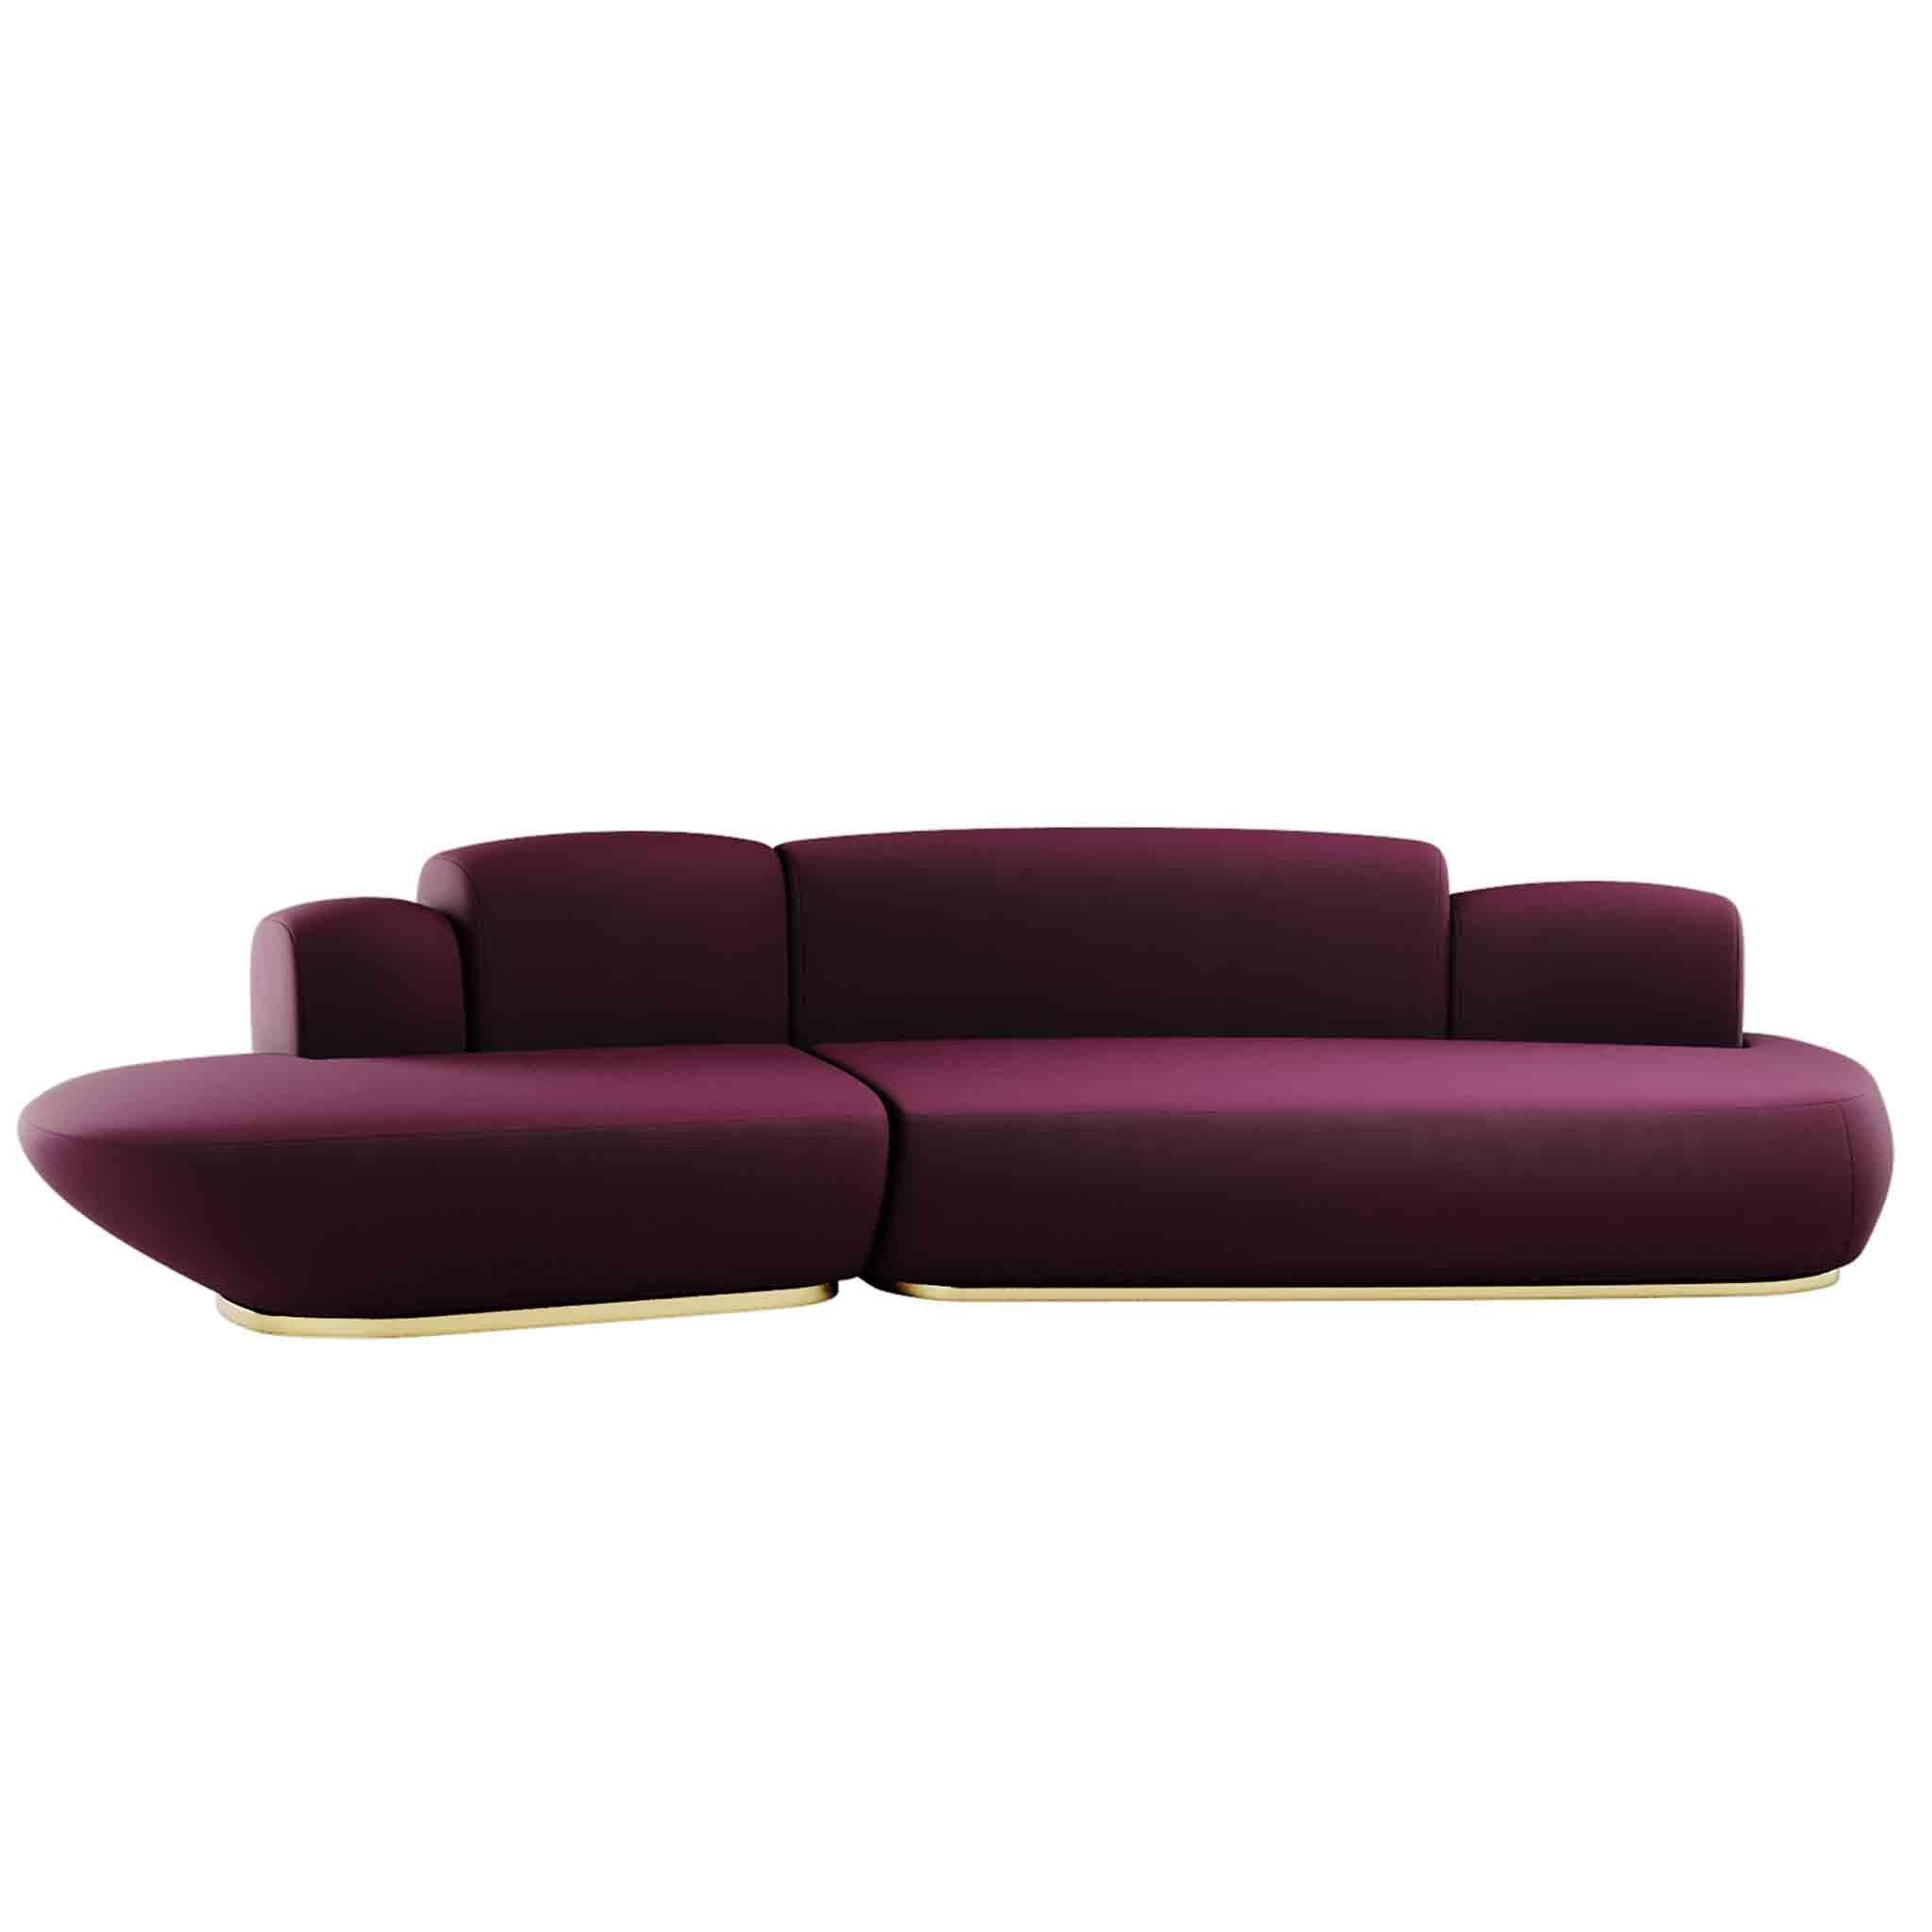 Das Vonkli Sofa ist ein modernes, rundes Sofa mit Chaiselongue, das mit seinem geschwungenen Design jedem Wohnzimmer eine klassisch-schicke Ausstrahlung verleiht. Ein zeitloses Sofa, das die Komfortbedürfnisse Ihrer Gäste und die Bewunderung in